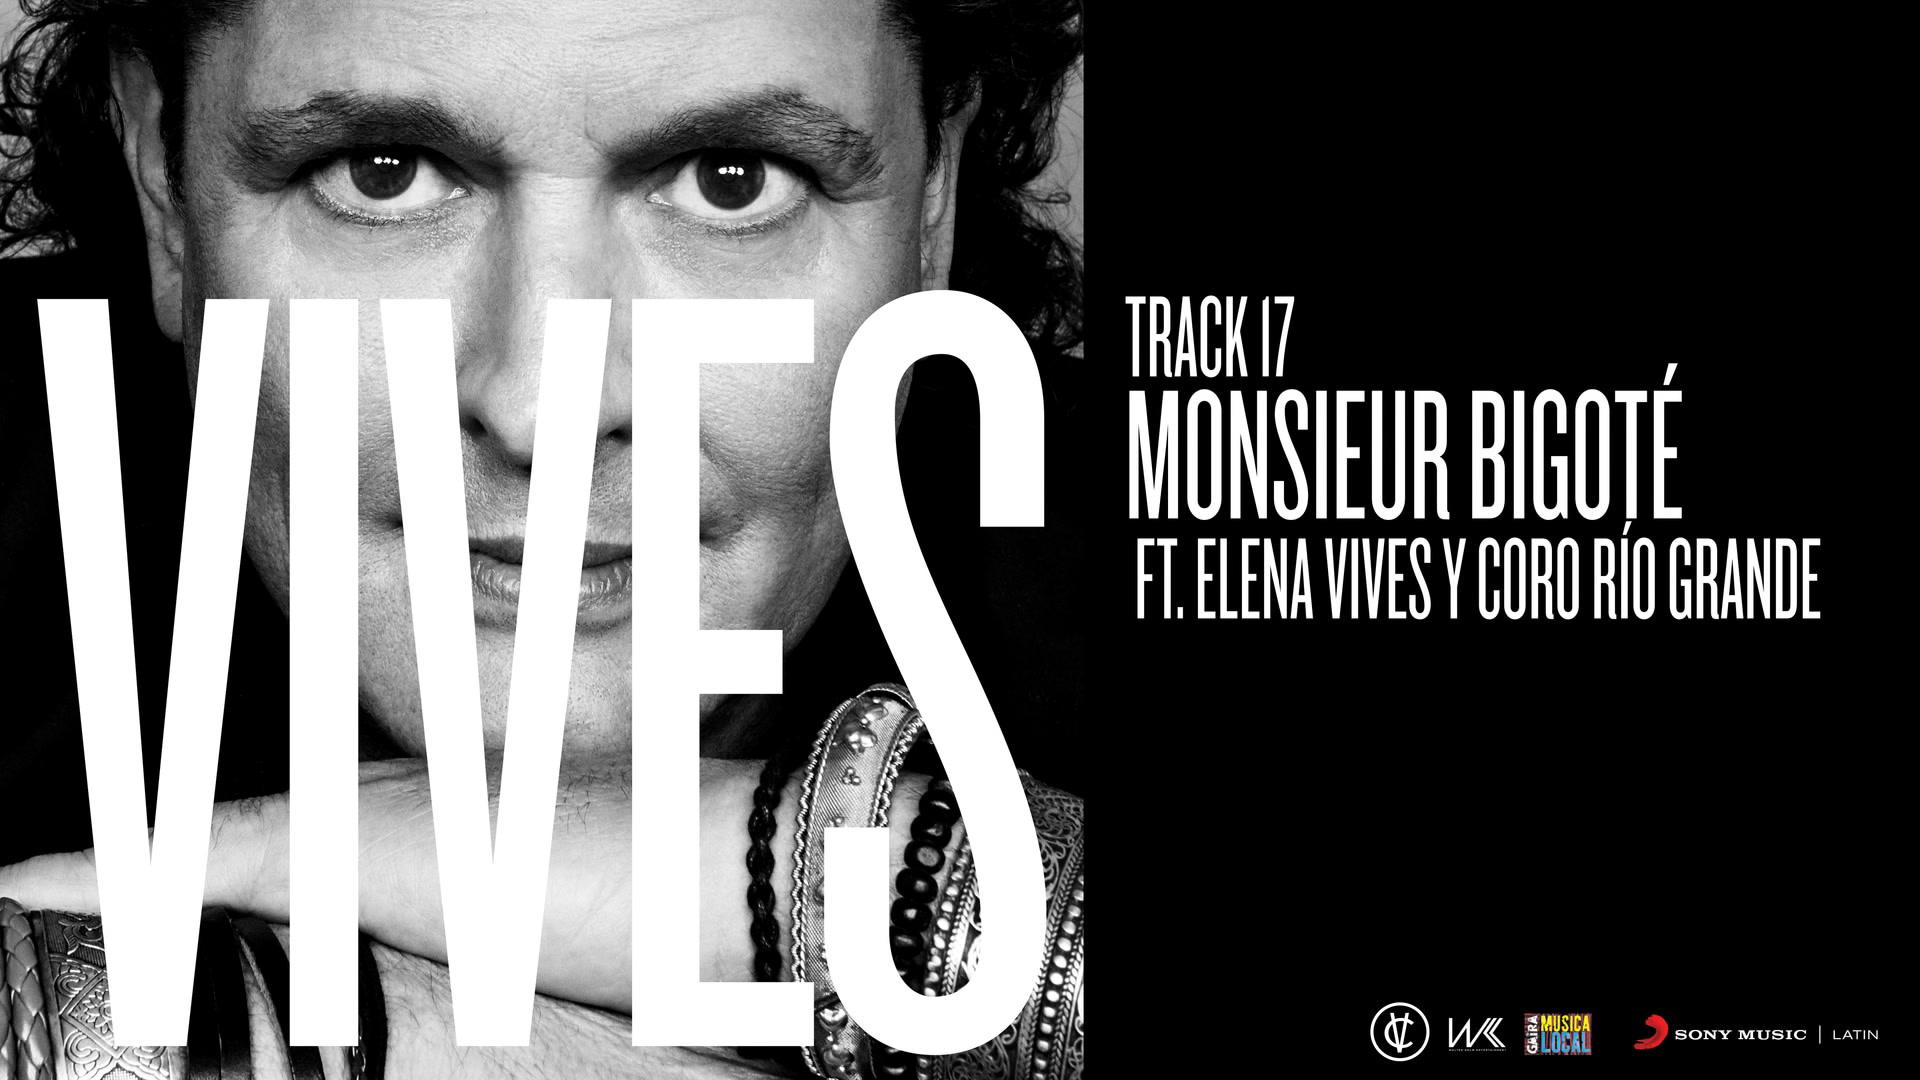 Carlos Vives - Monsieur Bigoté (Audio)